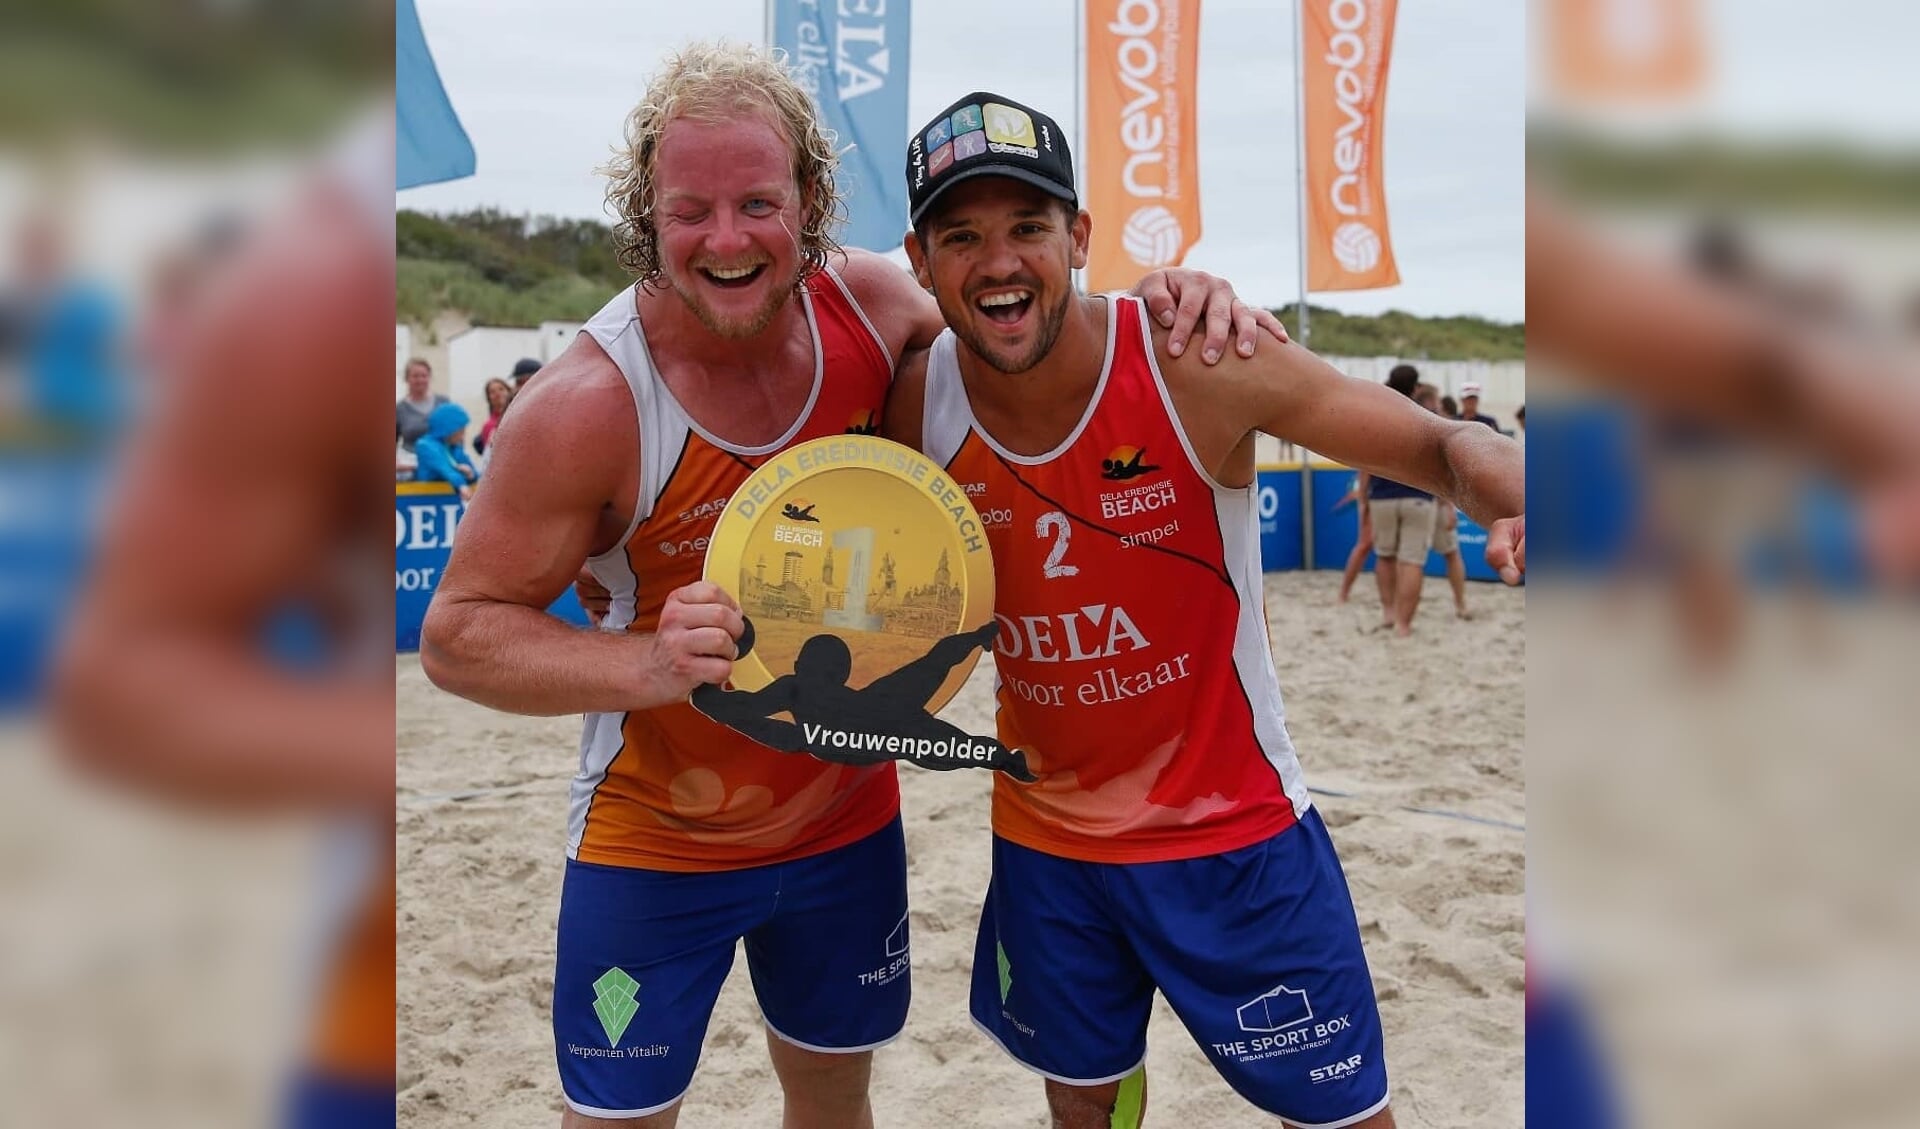 Eind vorige maand was het goud voor Bas Verpoorten met zijn teamgenoot Eargenell Dearney de Cuba in de  Dela Eredivisie Beachvolleybal Tour